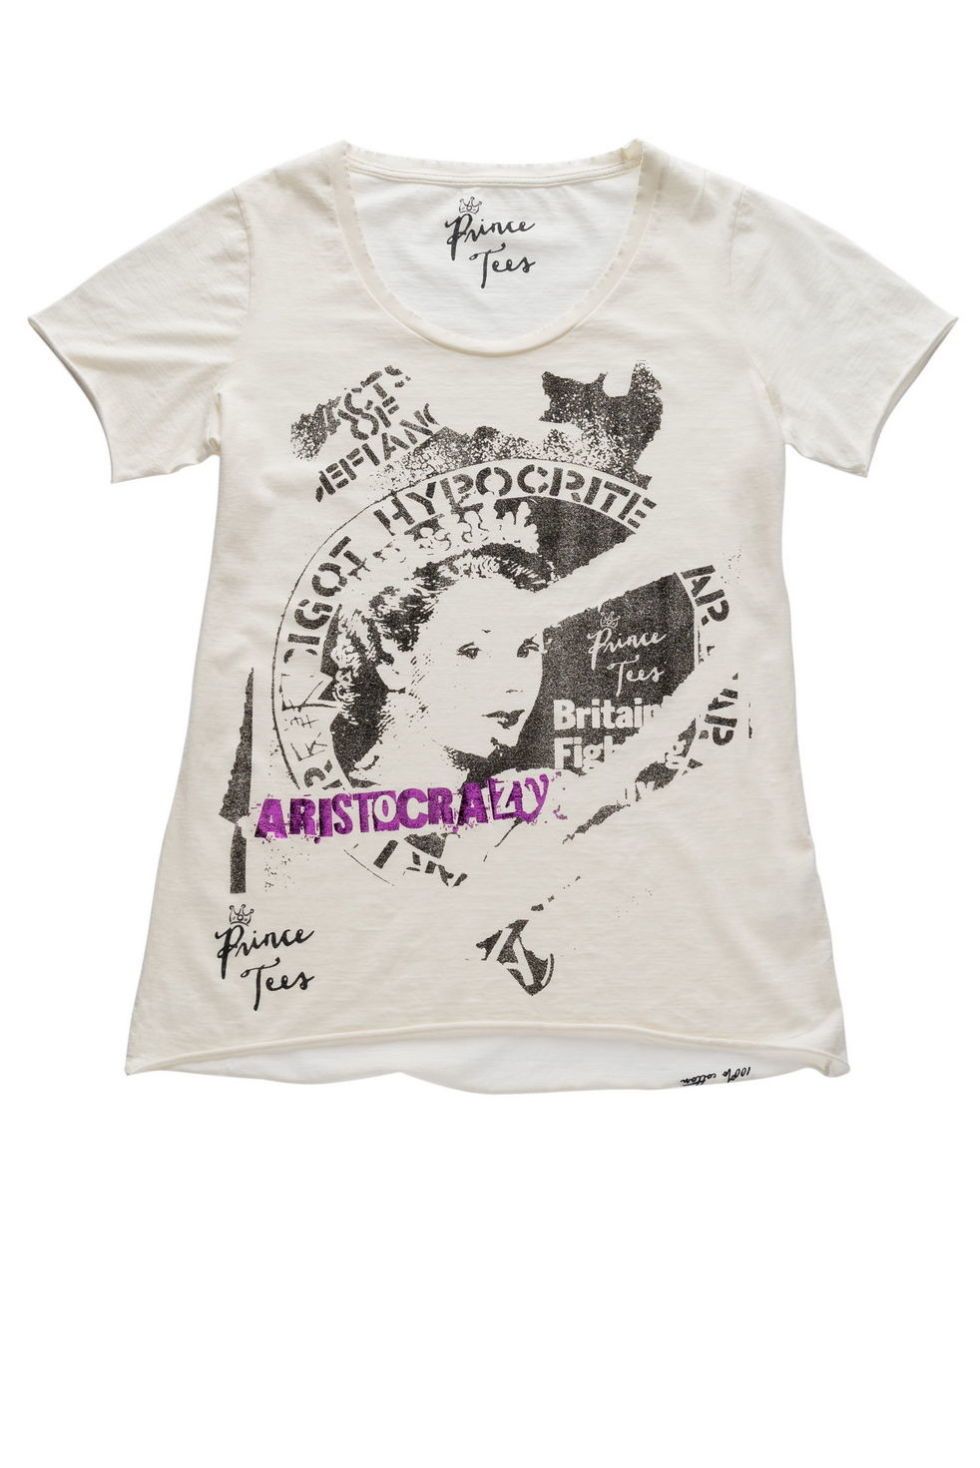 Coachella style con la t-shirt di cotone e scritte di Prince Tees